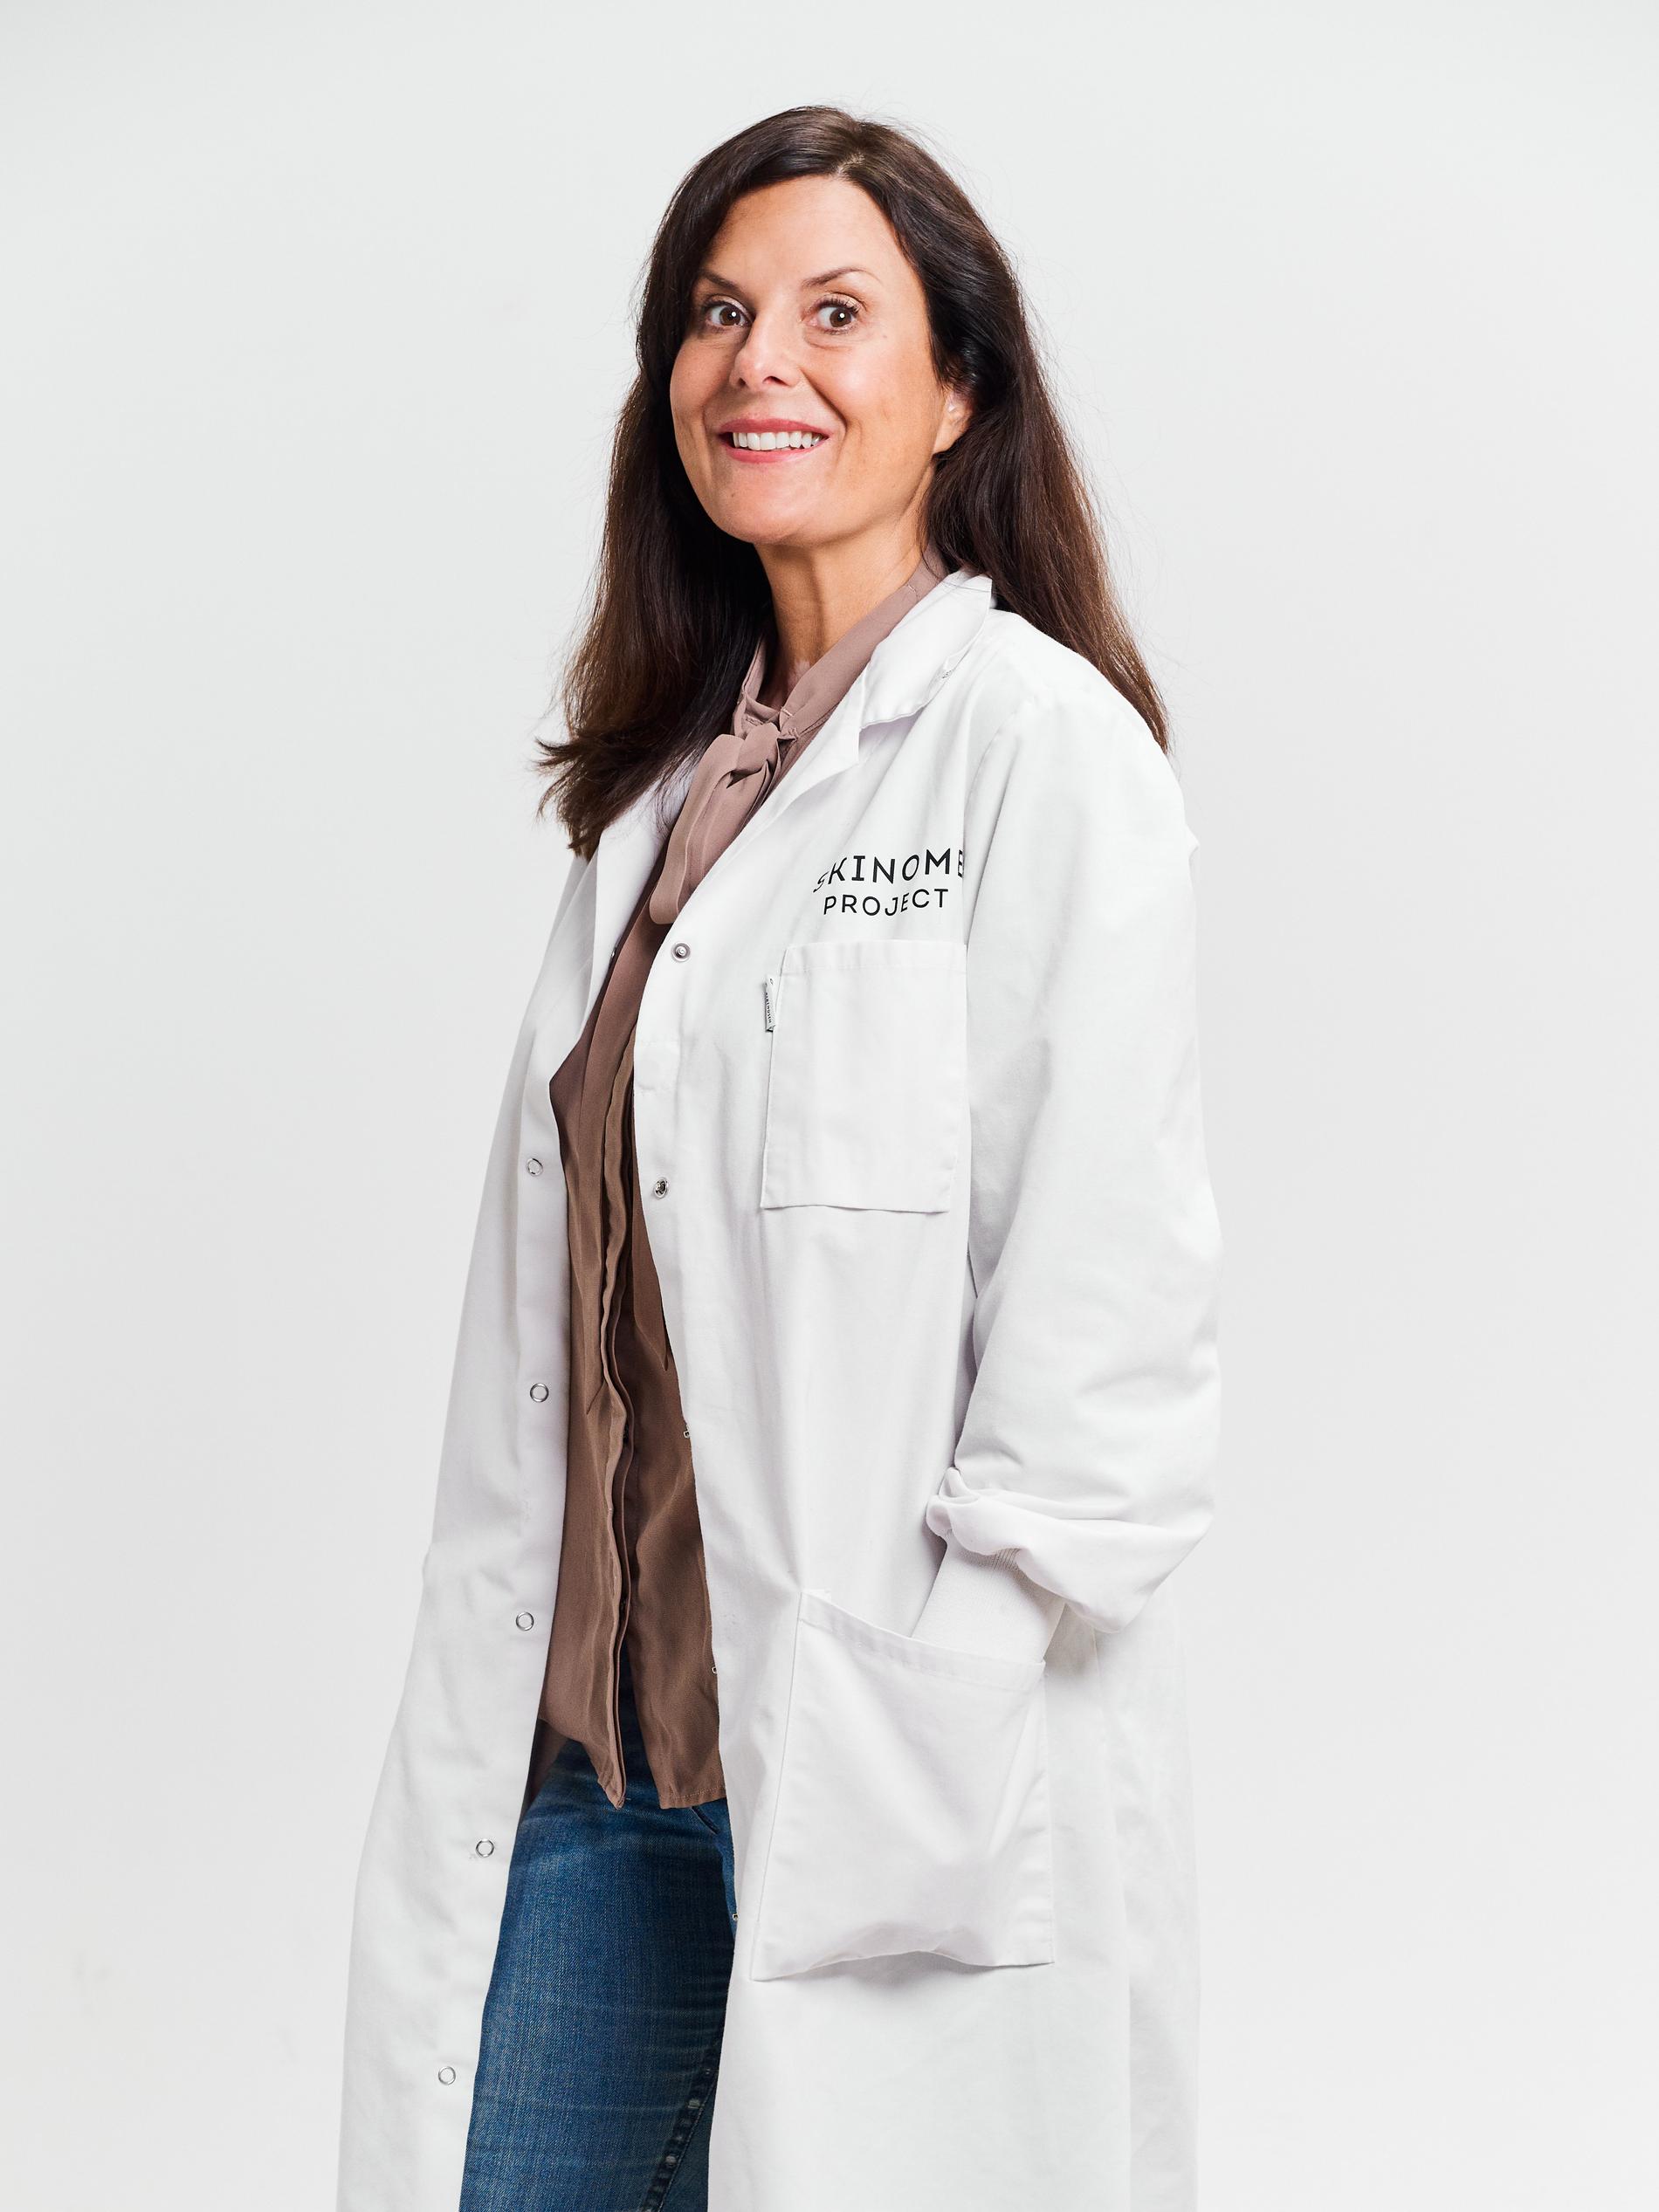 Johanna Gillbro är apotekare, doktor i experimentell dermatologi och grundaren bakom hudvårdsmärket Skinome. Hon har även skrivit boken Hudbibeln/The Scandinavian Skincare Bible som numera är översatt till 7 språk. 